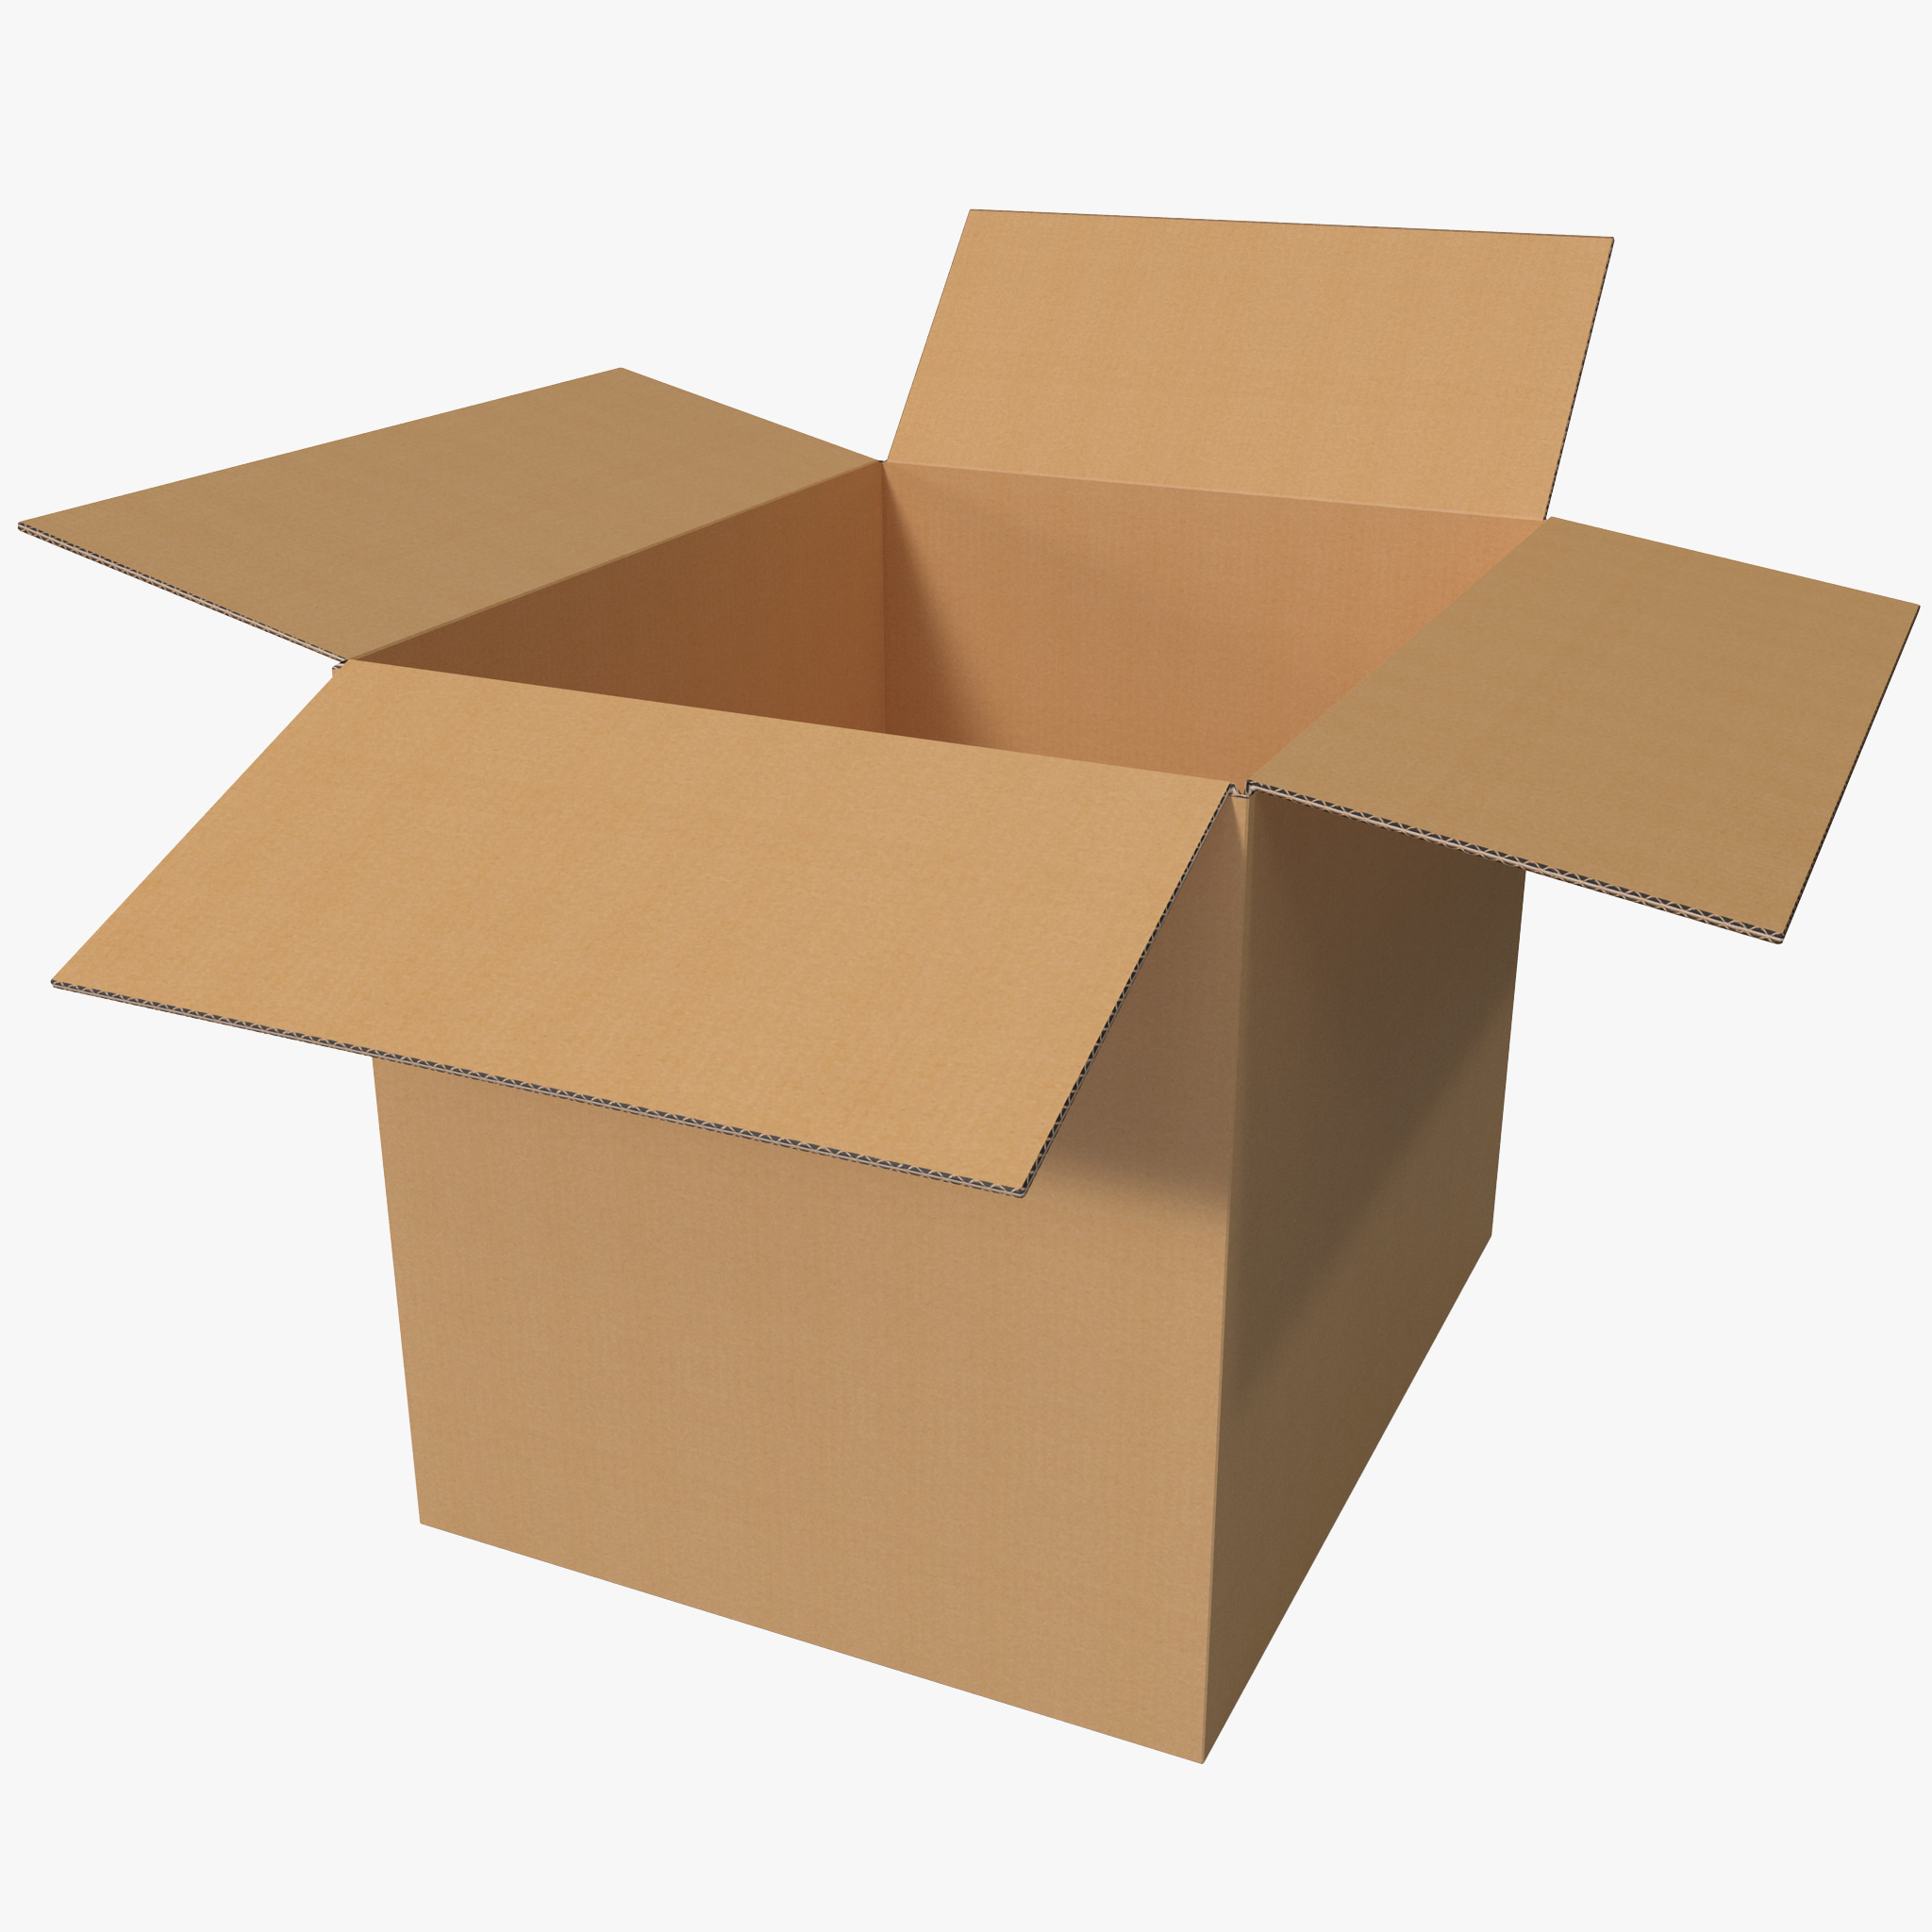 3d model open cardboard box
 Open Box